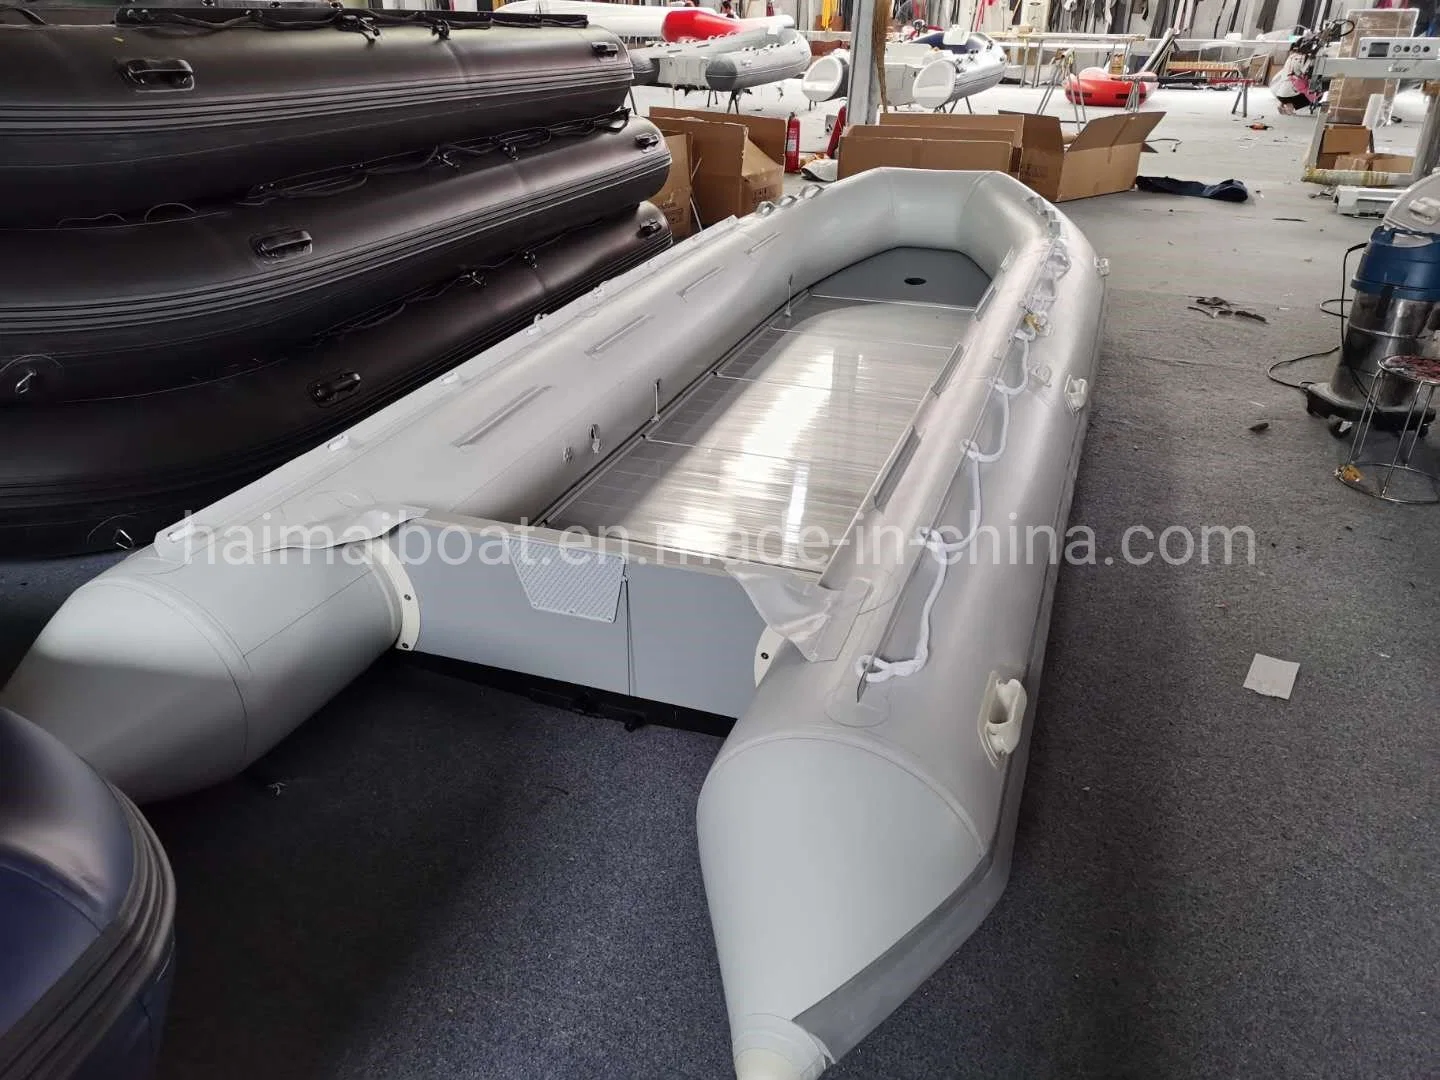 Fabricant de bateaux de la Chine 19,6 ft 6M Produit de sports nautiques Hypalon Inflatable la ligne de Bateau Bateau de pêche Bateau de sauvetage maritime offre bateau Panga Bateau Bateau de patrouille avec la CE